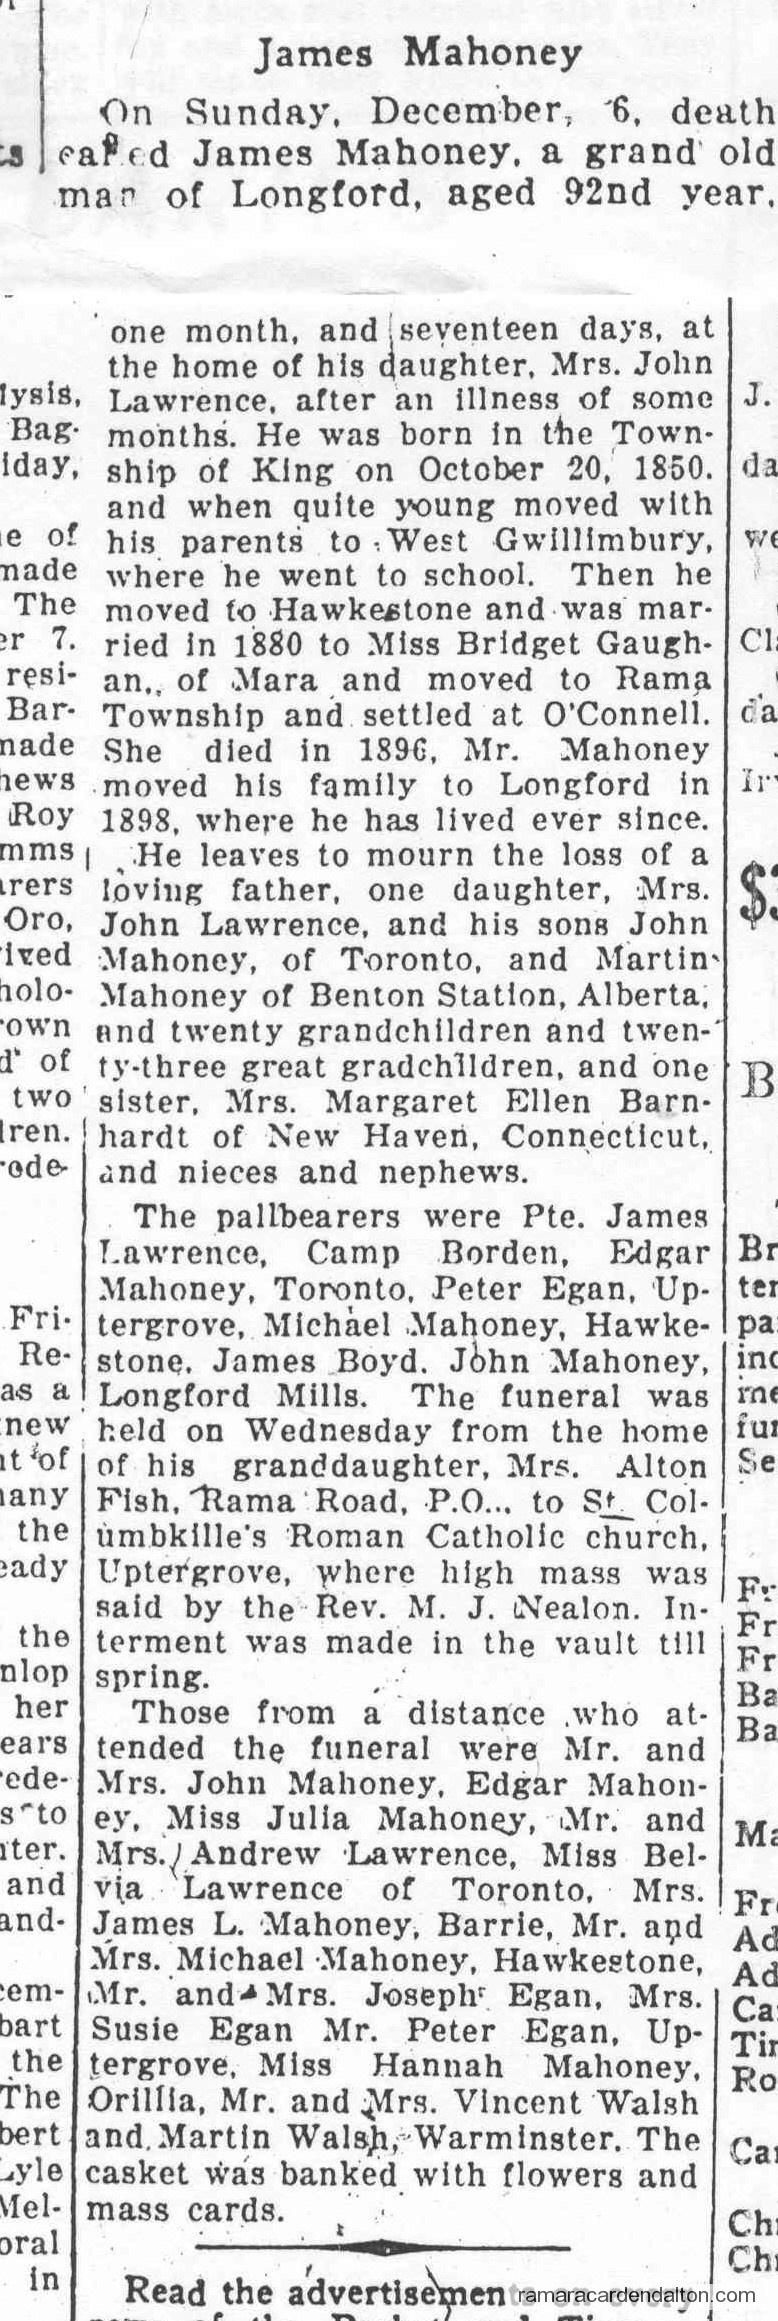 James Mahoney Obituary from Orillia Packet & Times November 1942